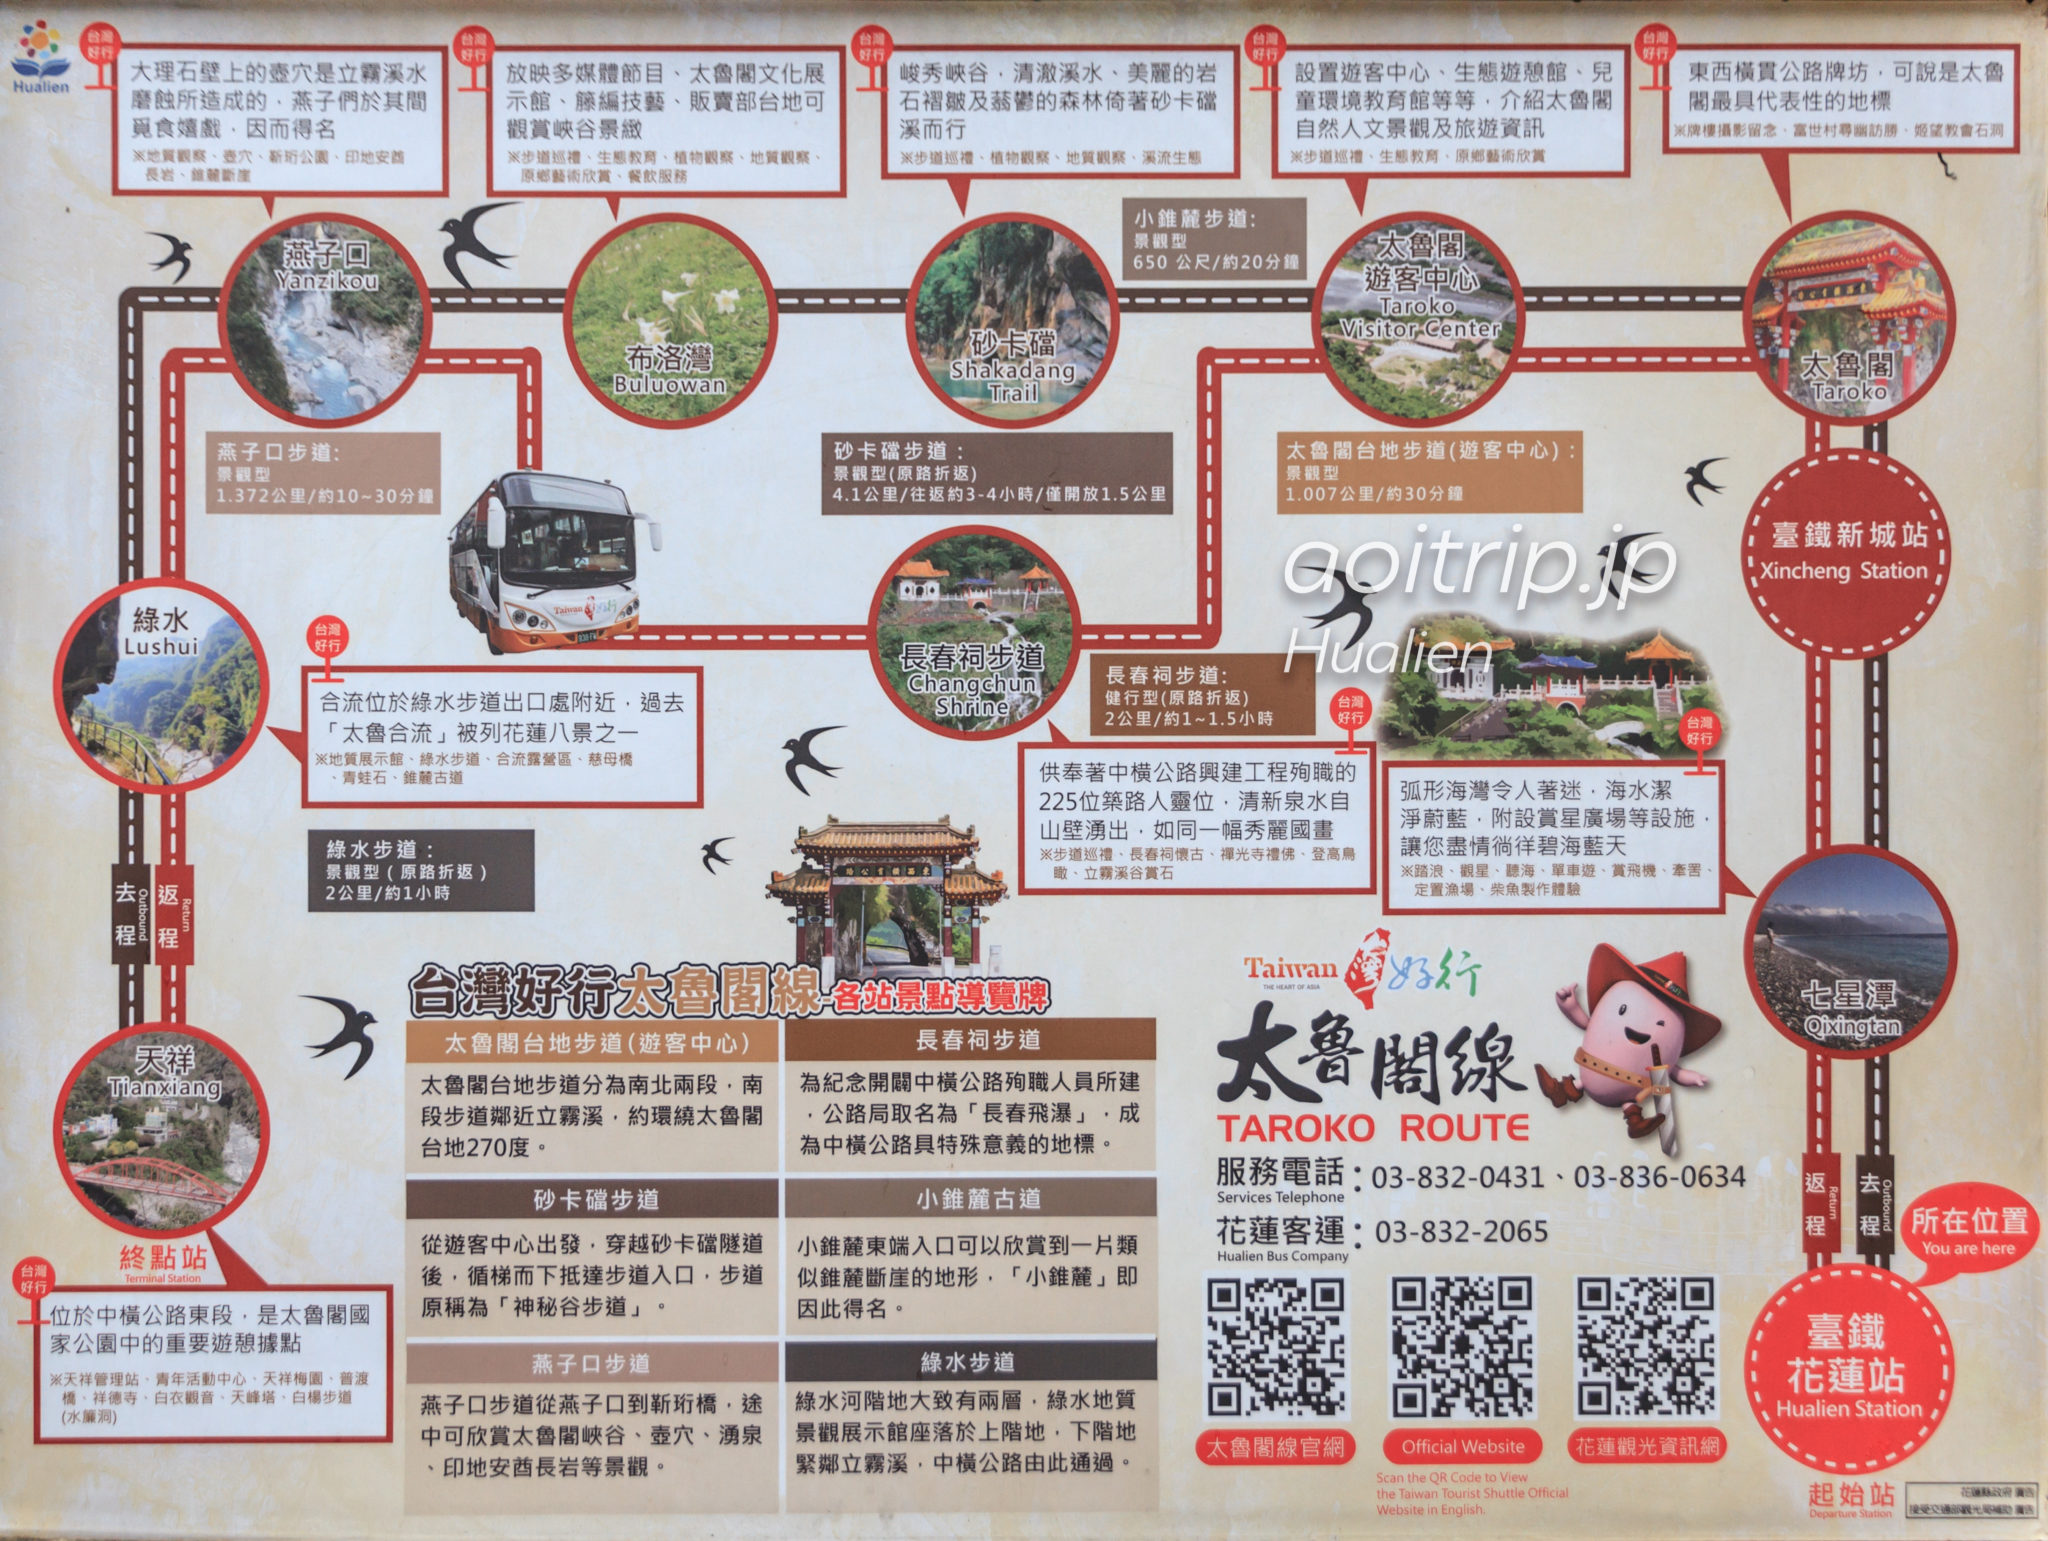 タロコ渓谷（太魯閣国家公園）のマップ